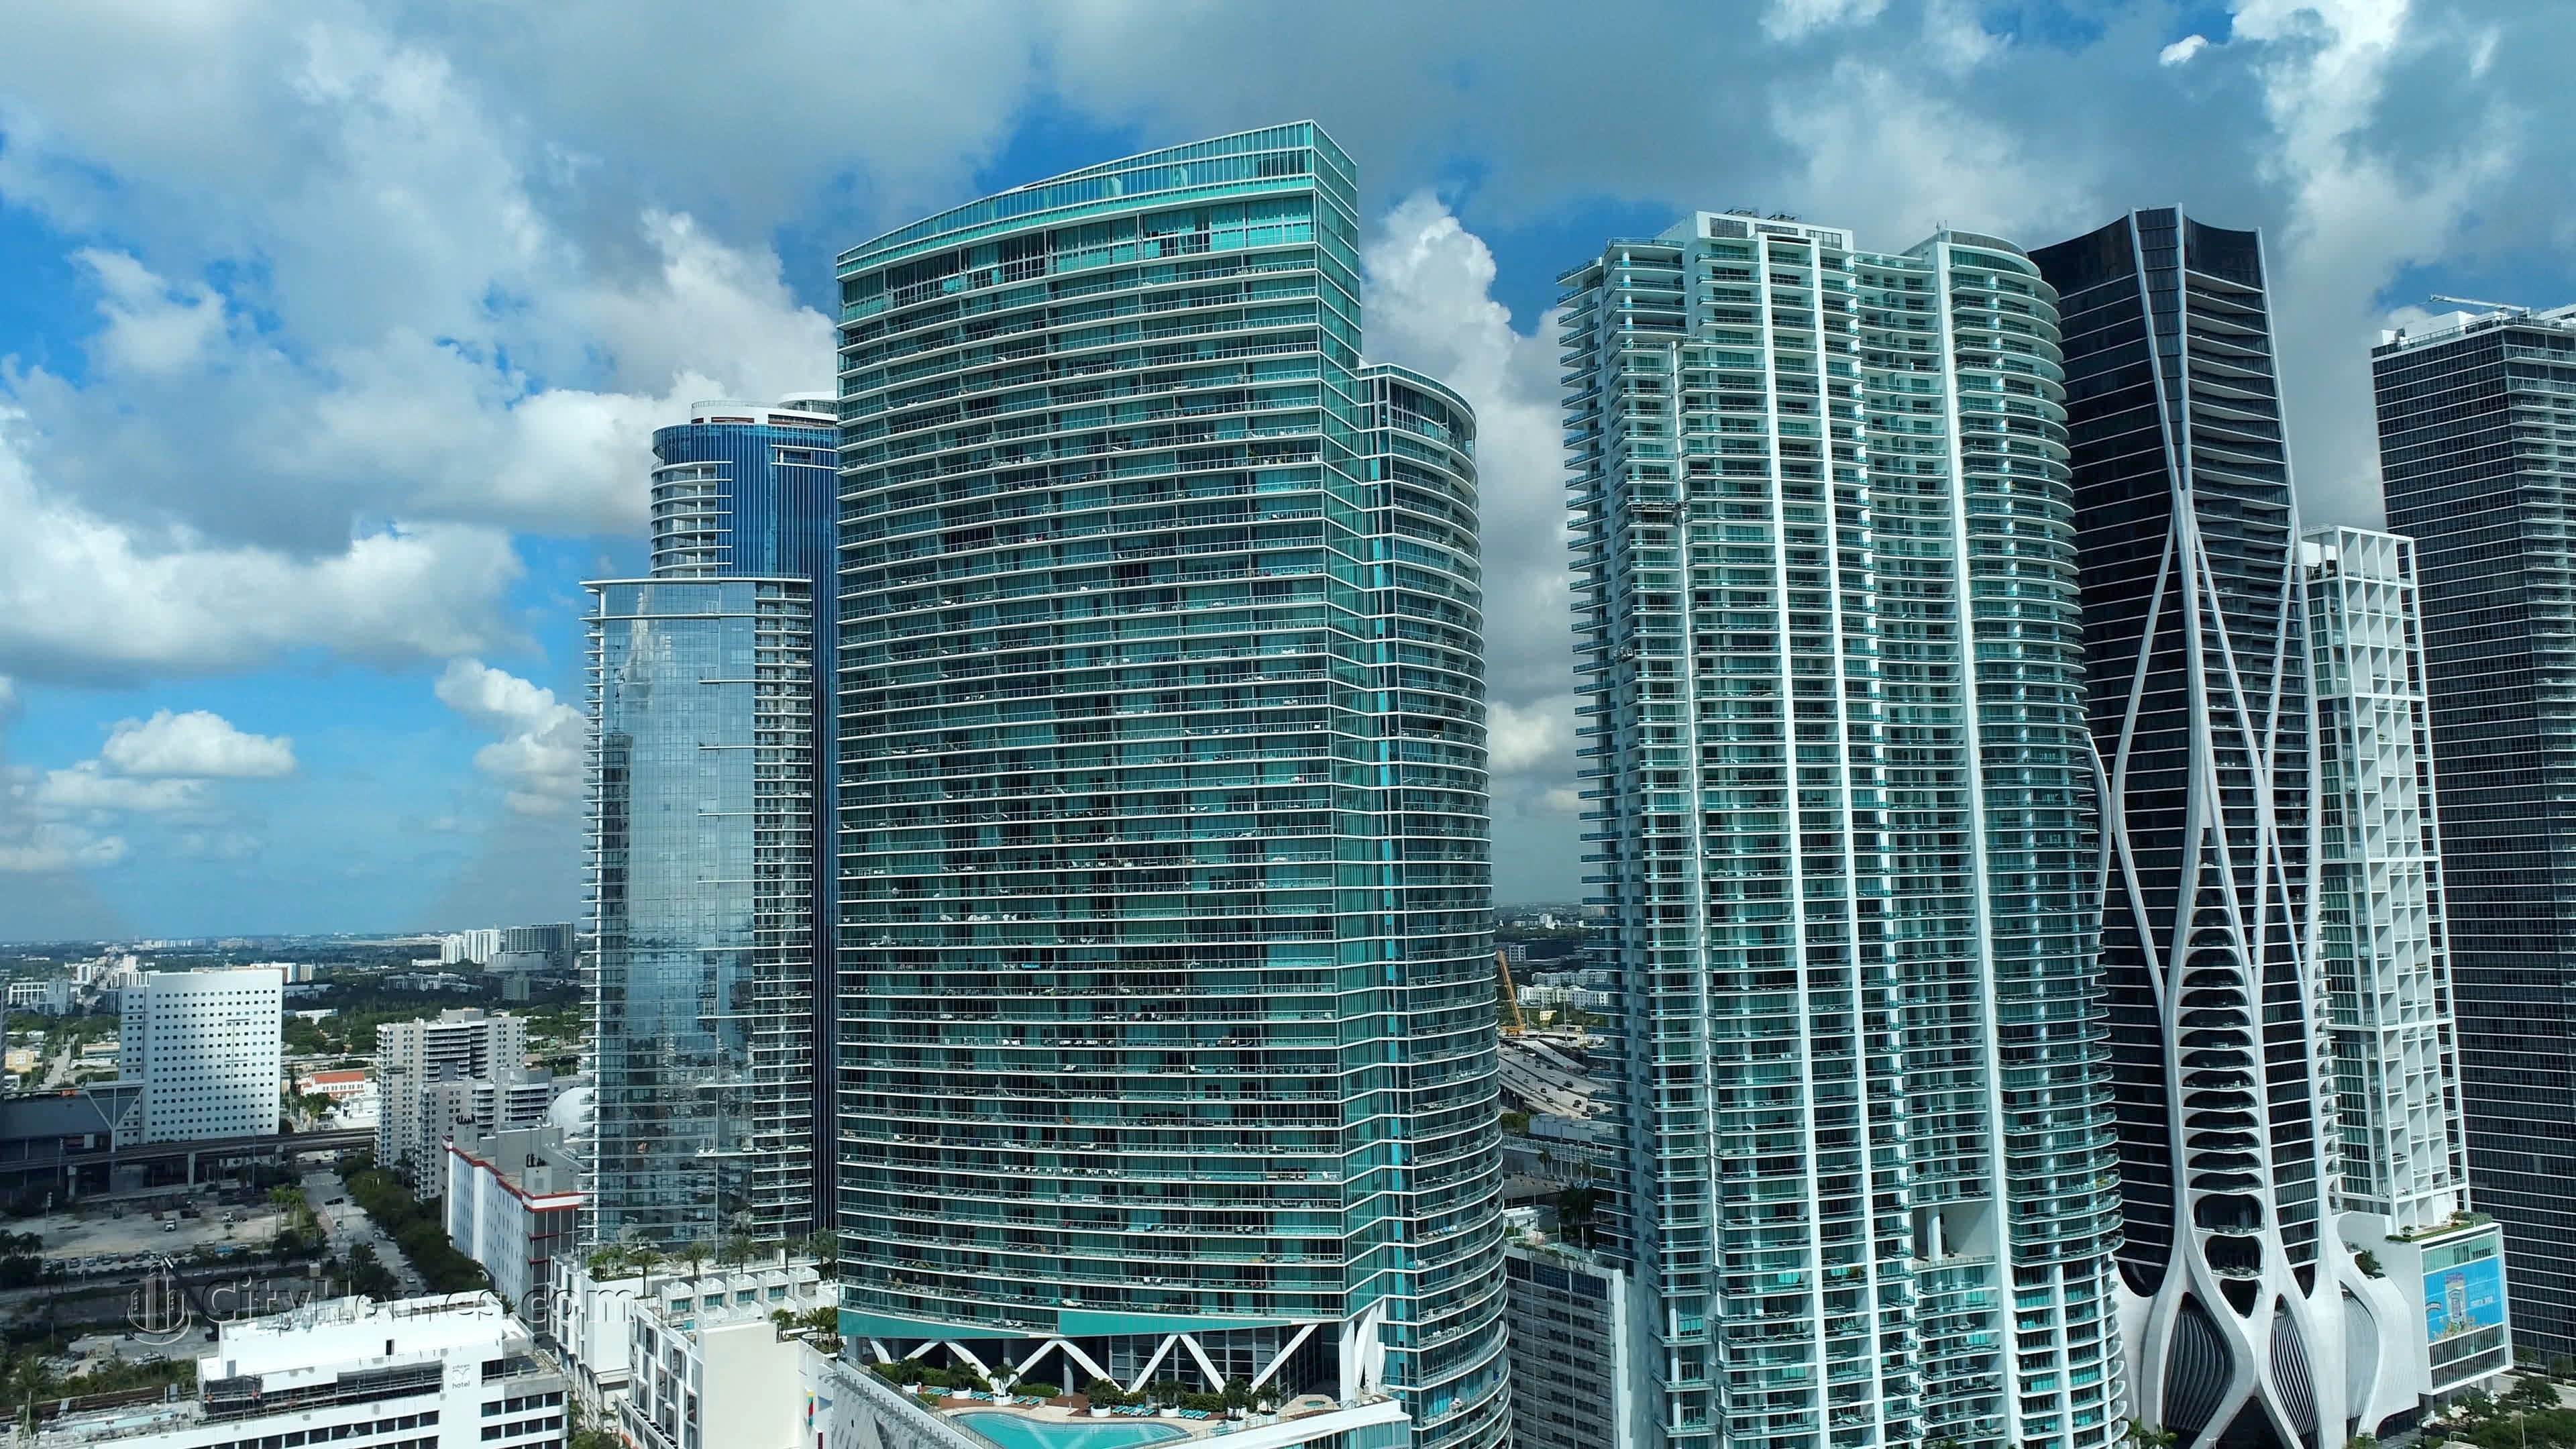 3. Marina Blue xây dựng tại 888 Biscayne Blvd, Miami, FL 33132